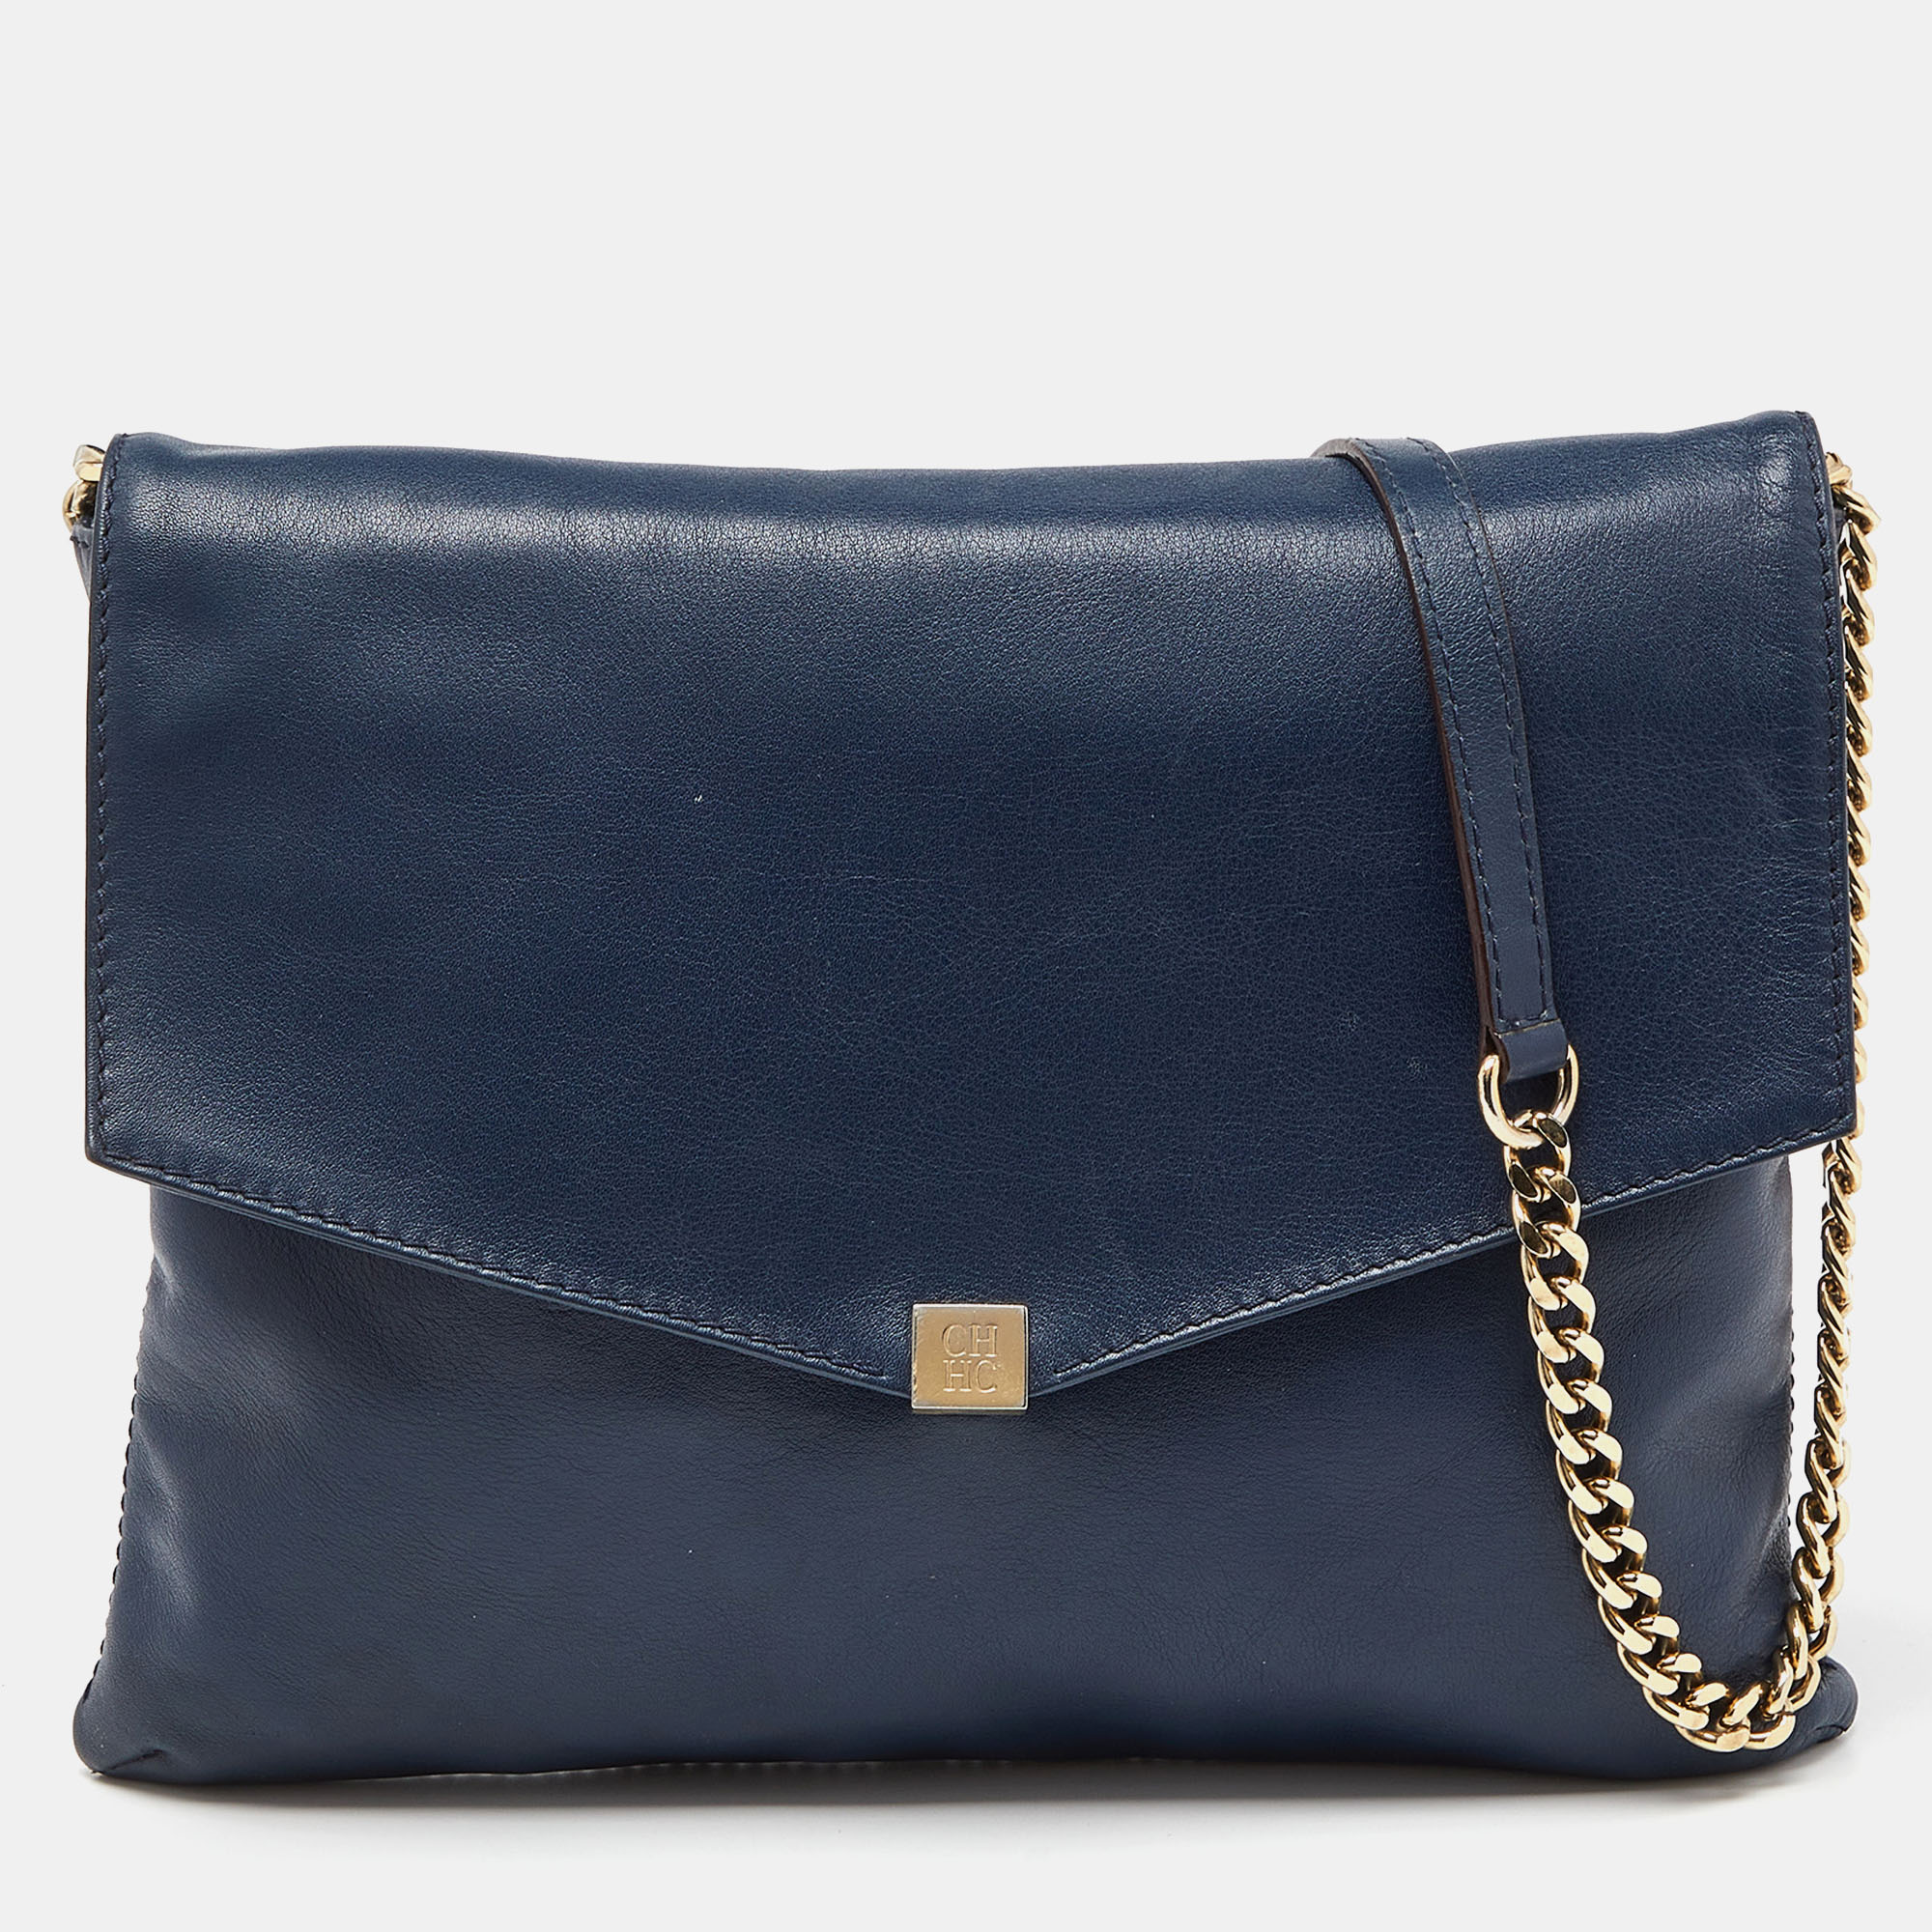 Carolina herrera navy blue leather envelope chain shoulder bag